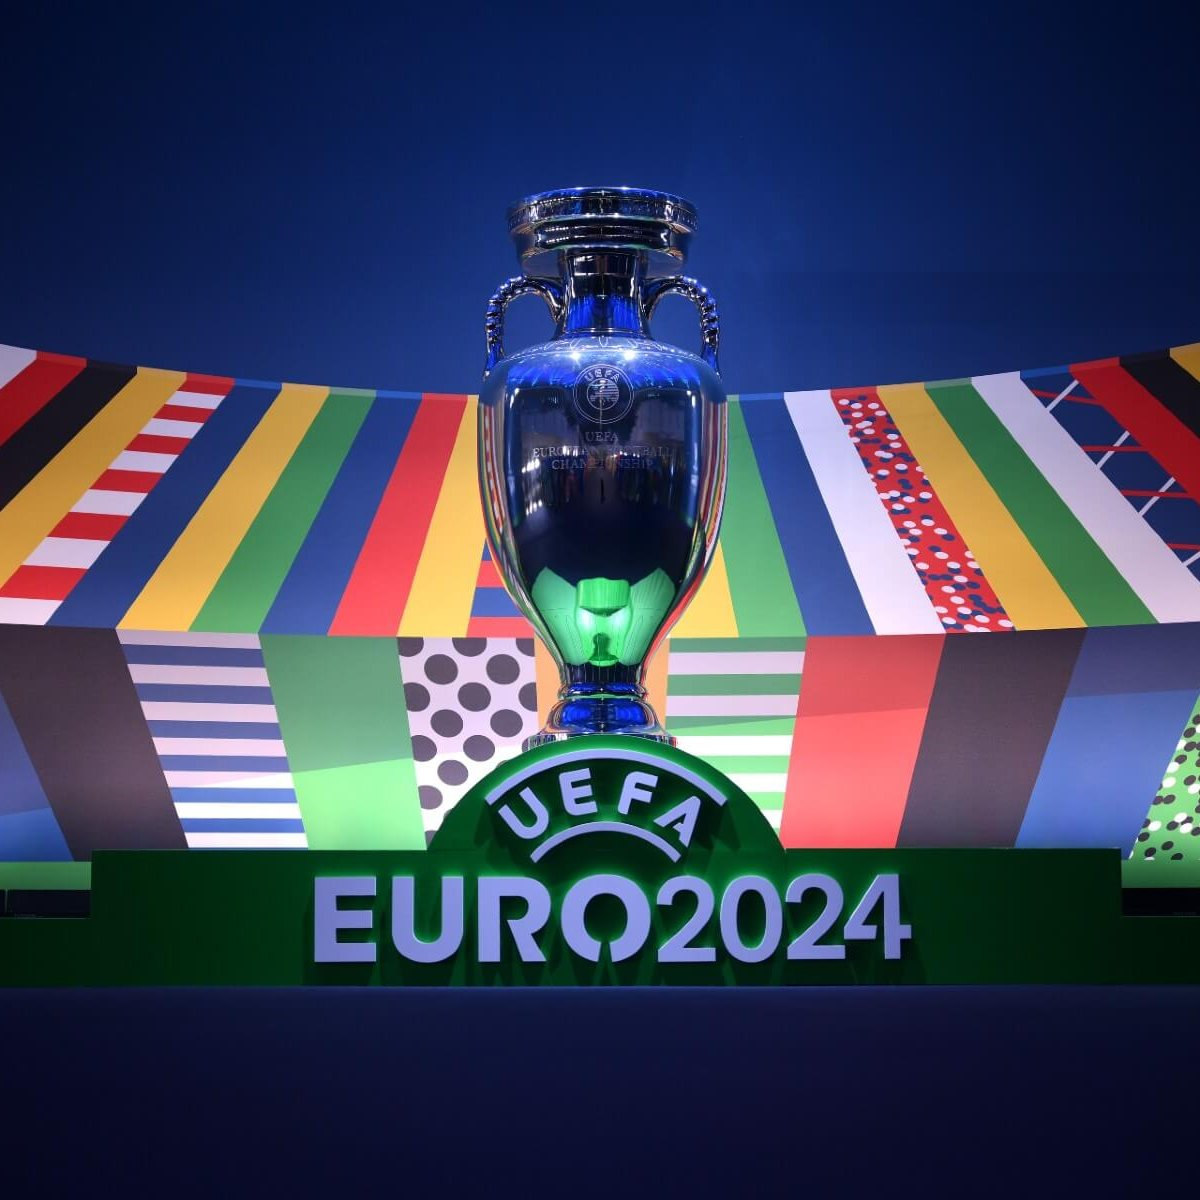 超萌的巴特熊等各种欧洲杯官方周边等你来选购！⚽⚽⚽2024 uefa欧洲杯